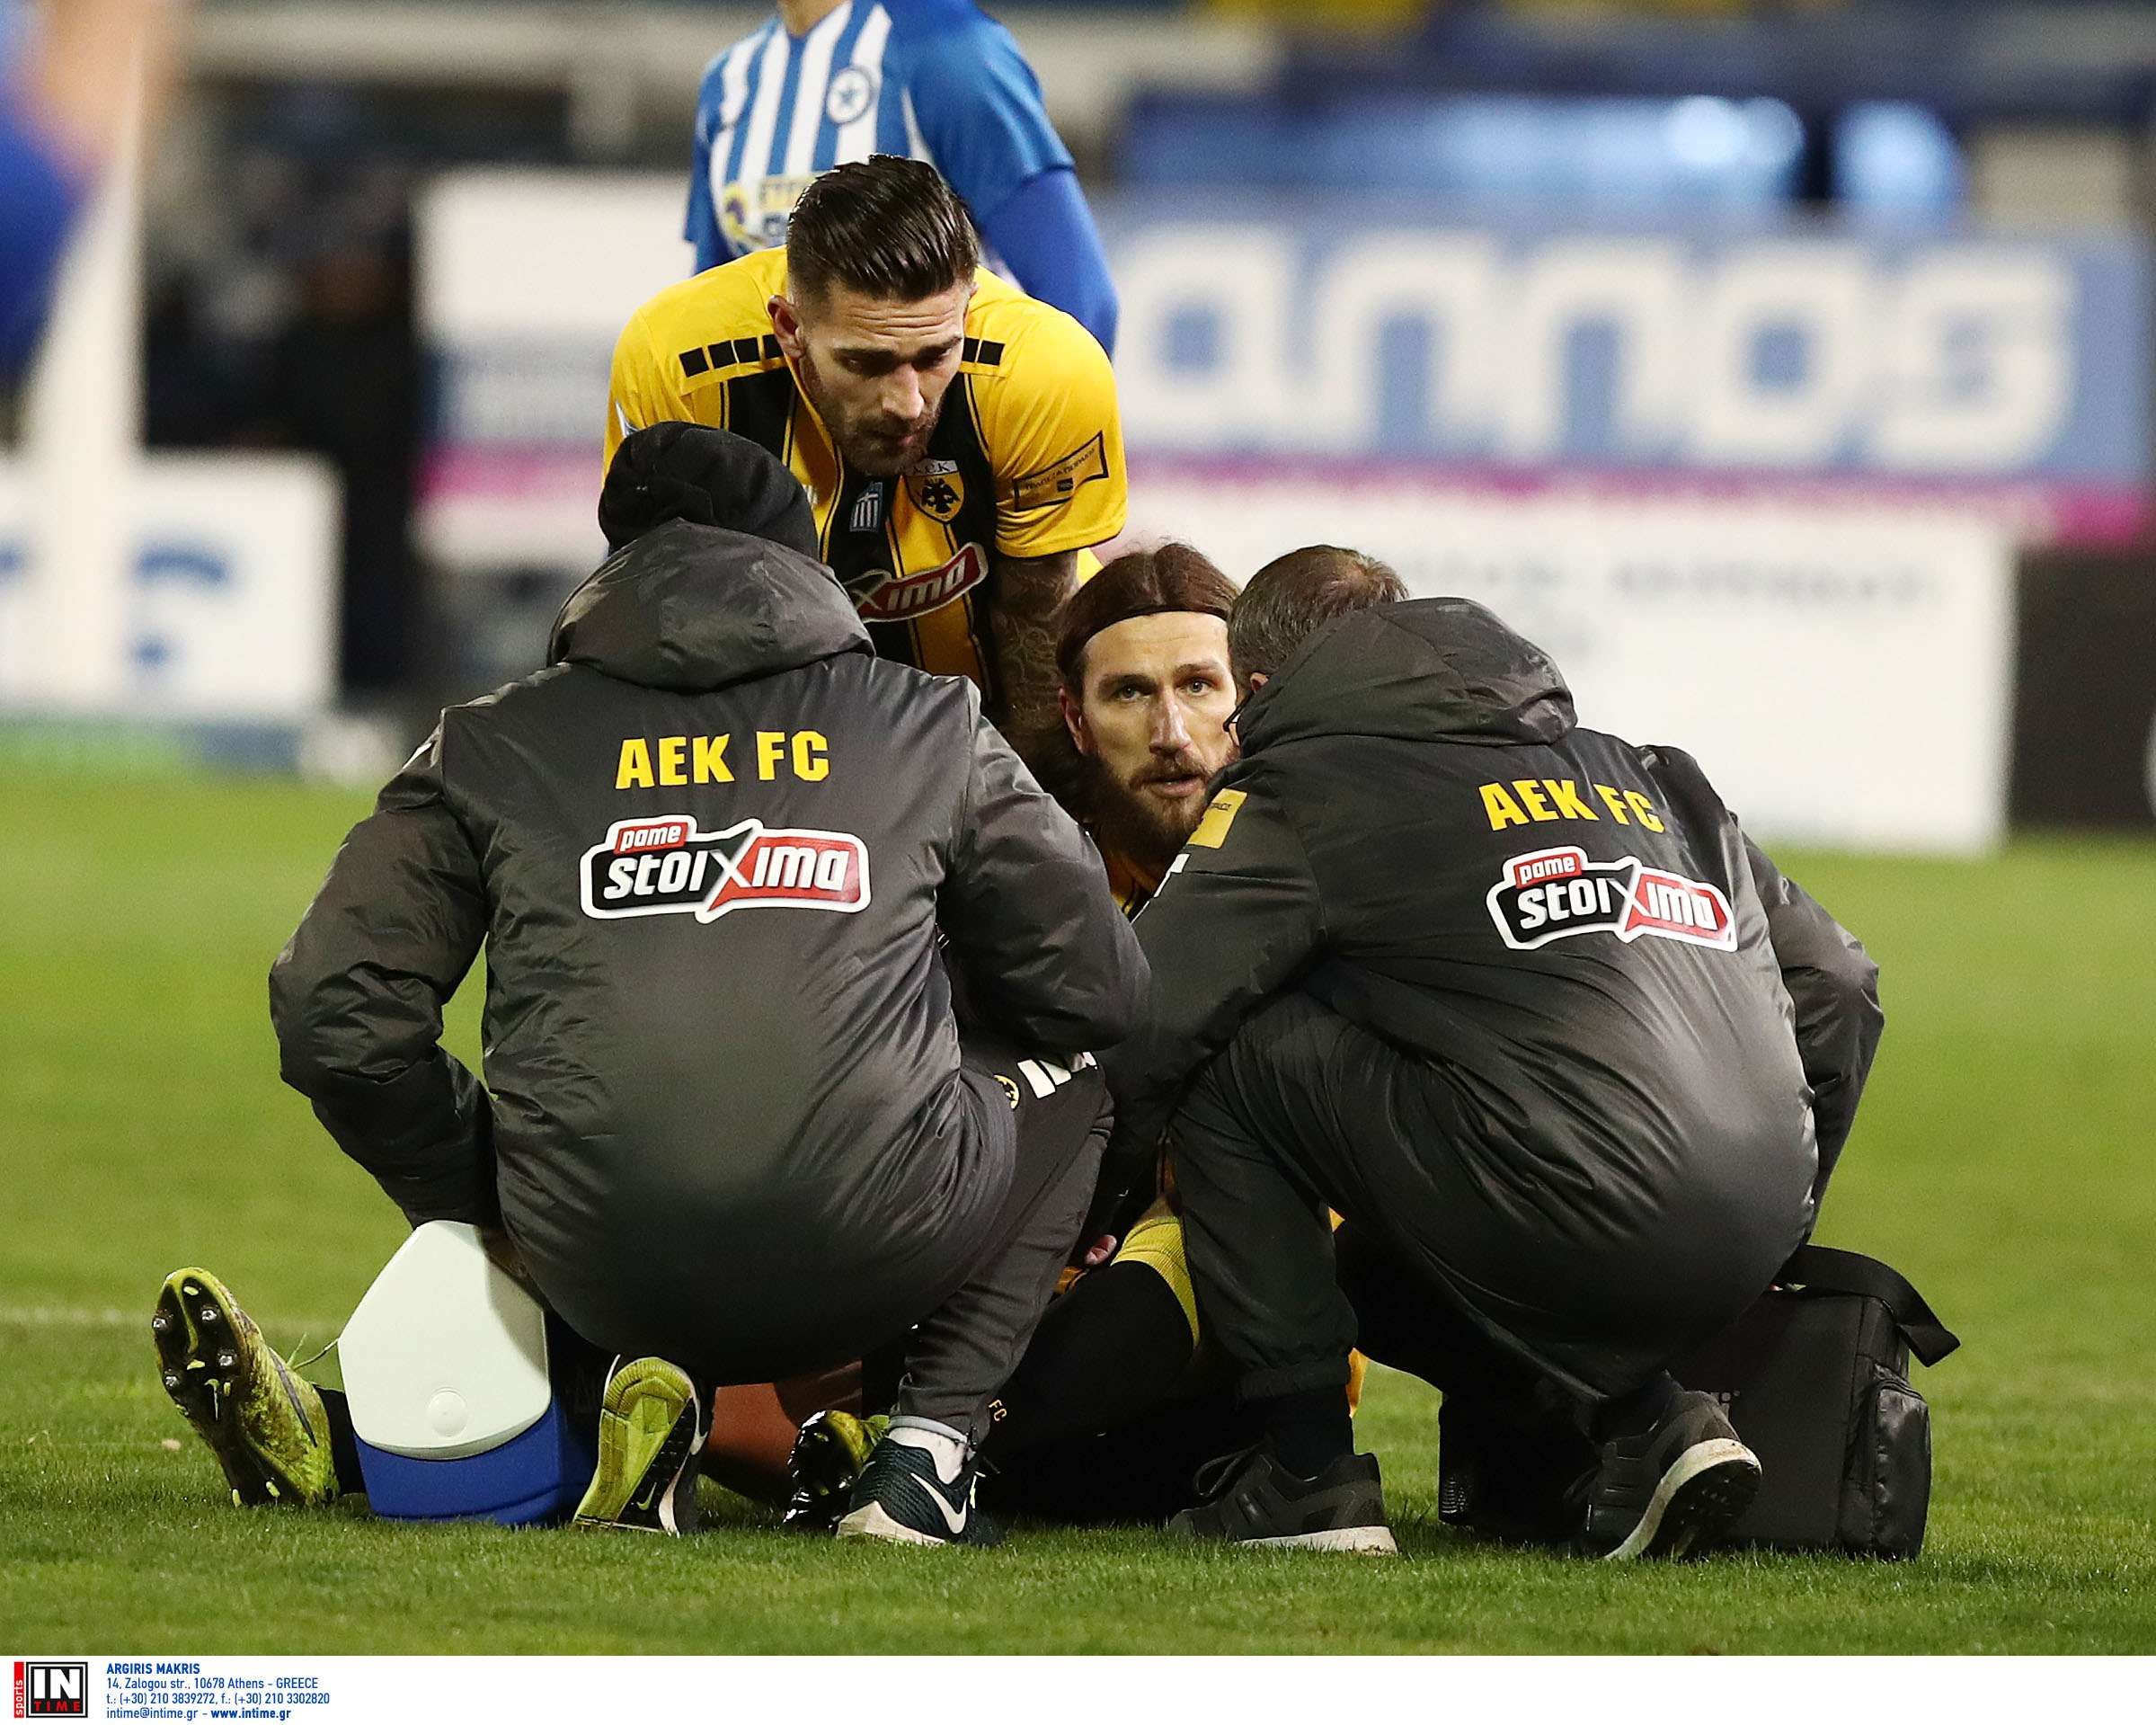 Чигринский получил травму в матче Кубка Греции, его с поля унесли медики: фото